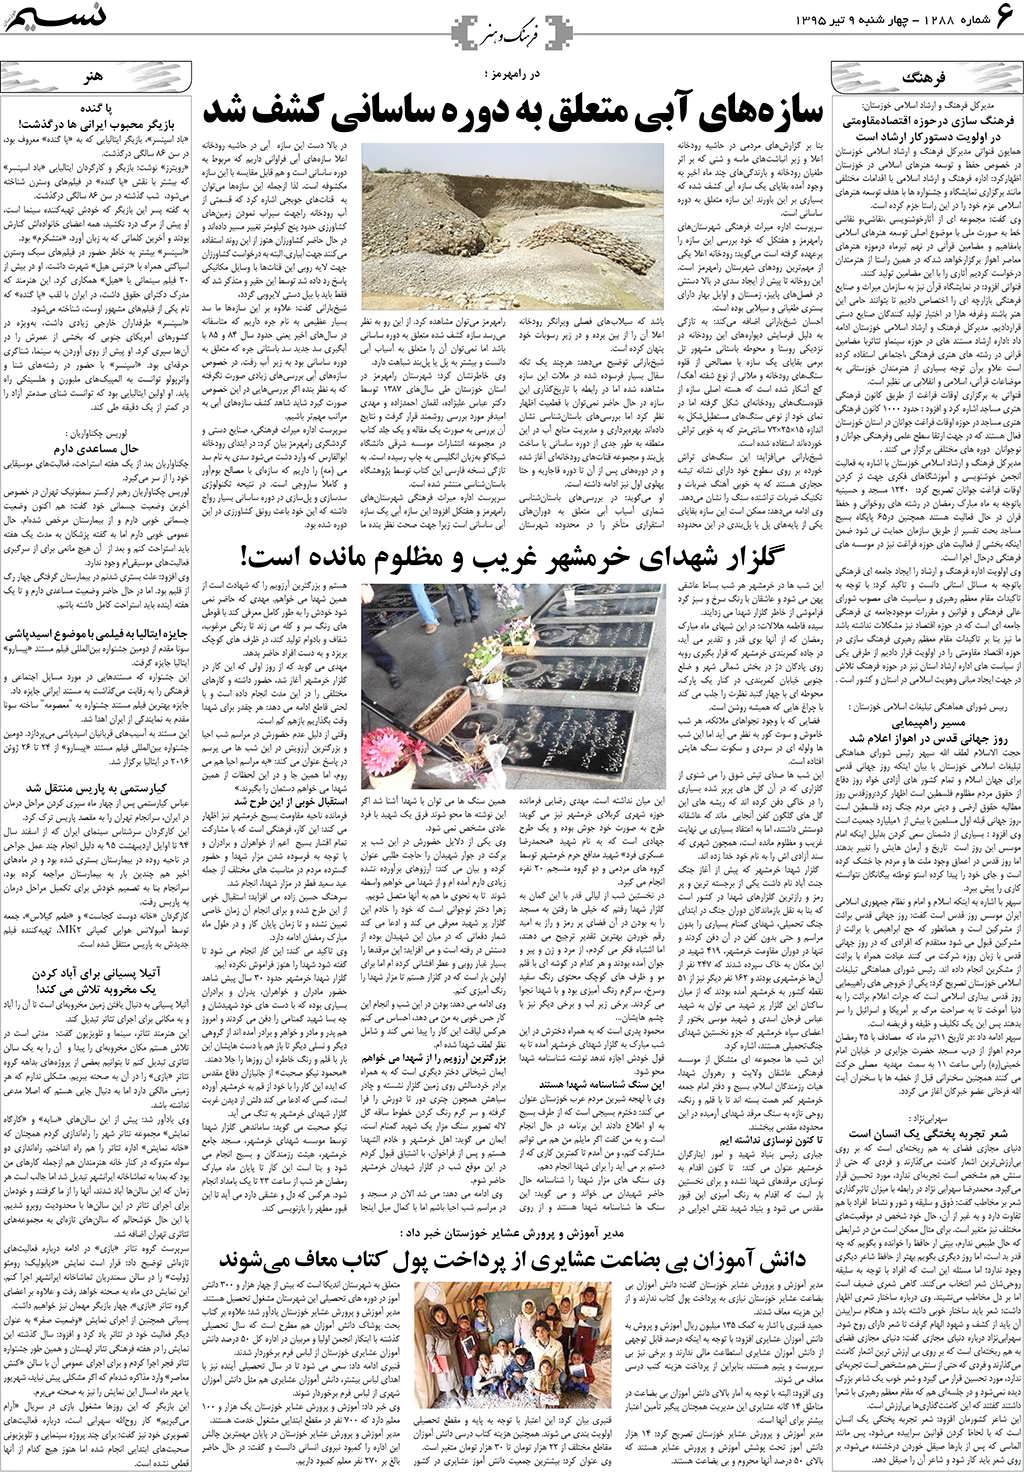 صفحه فرهنگ و هنر روزنامه نسیم شماره 1288